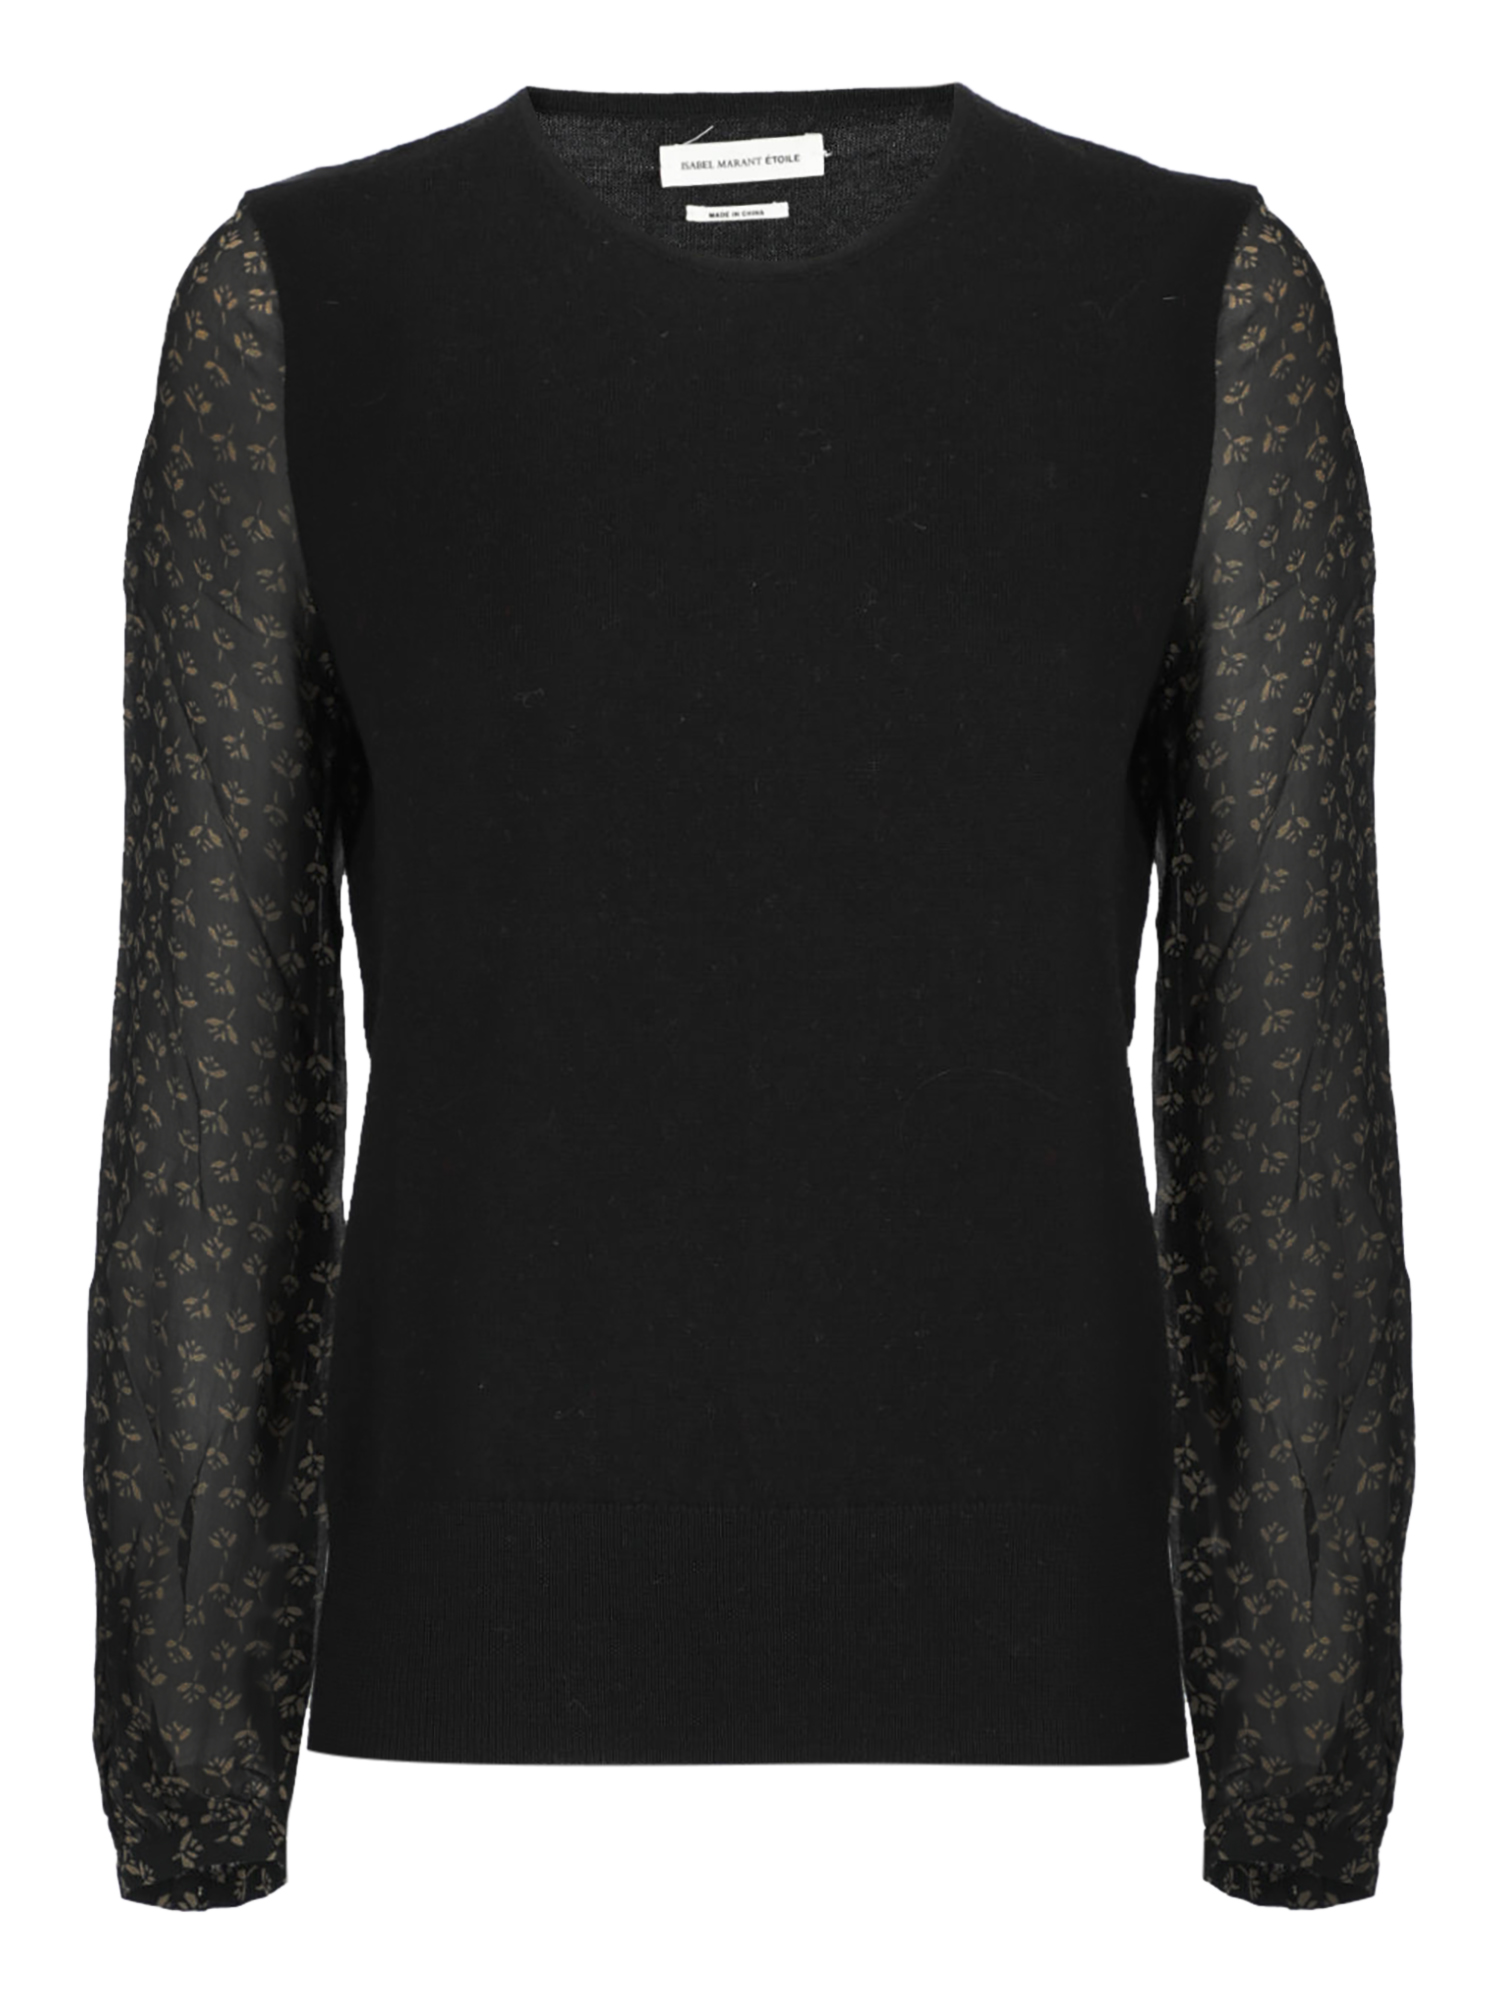 T-shirts Et Tops Pour Femme - Isabel Marant Etoile - En Wool Black - Taille:  -